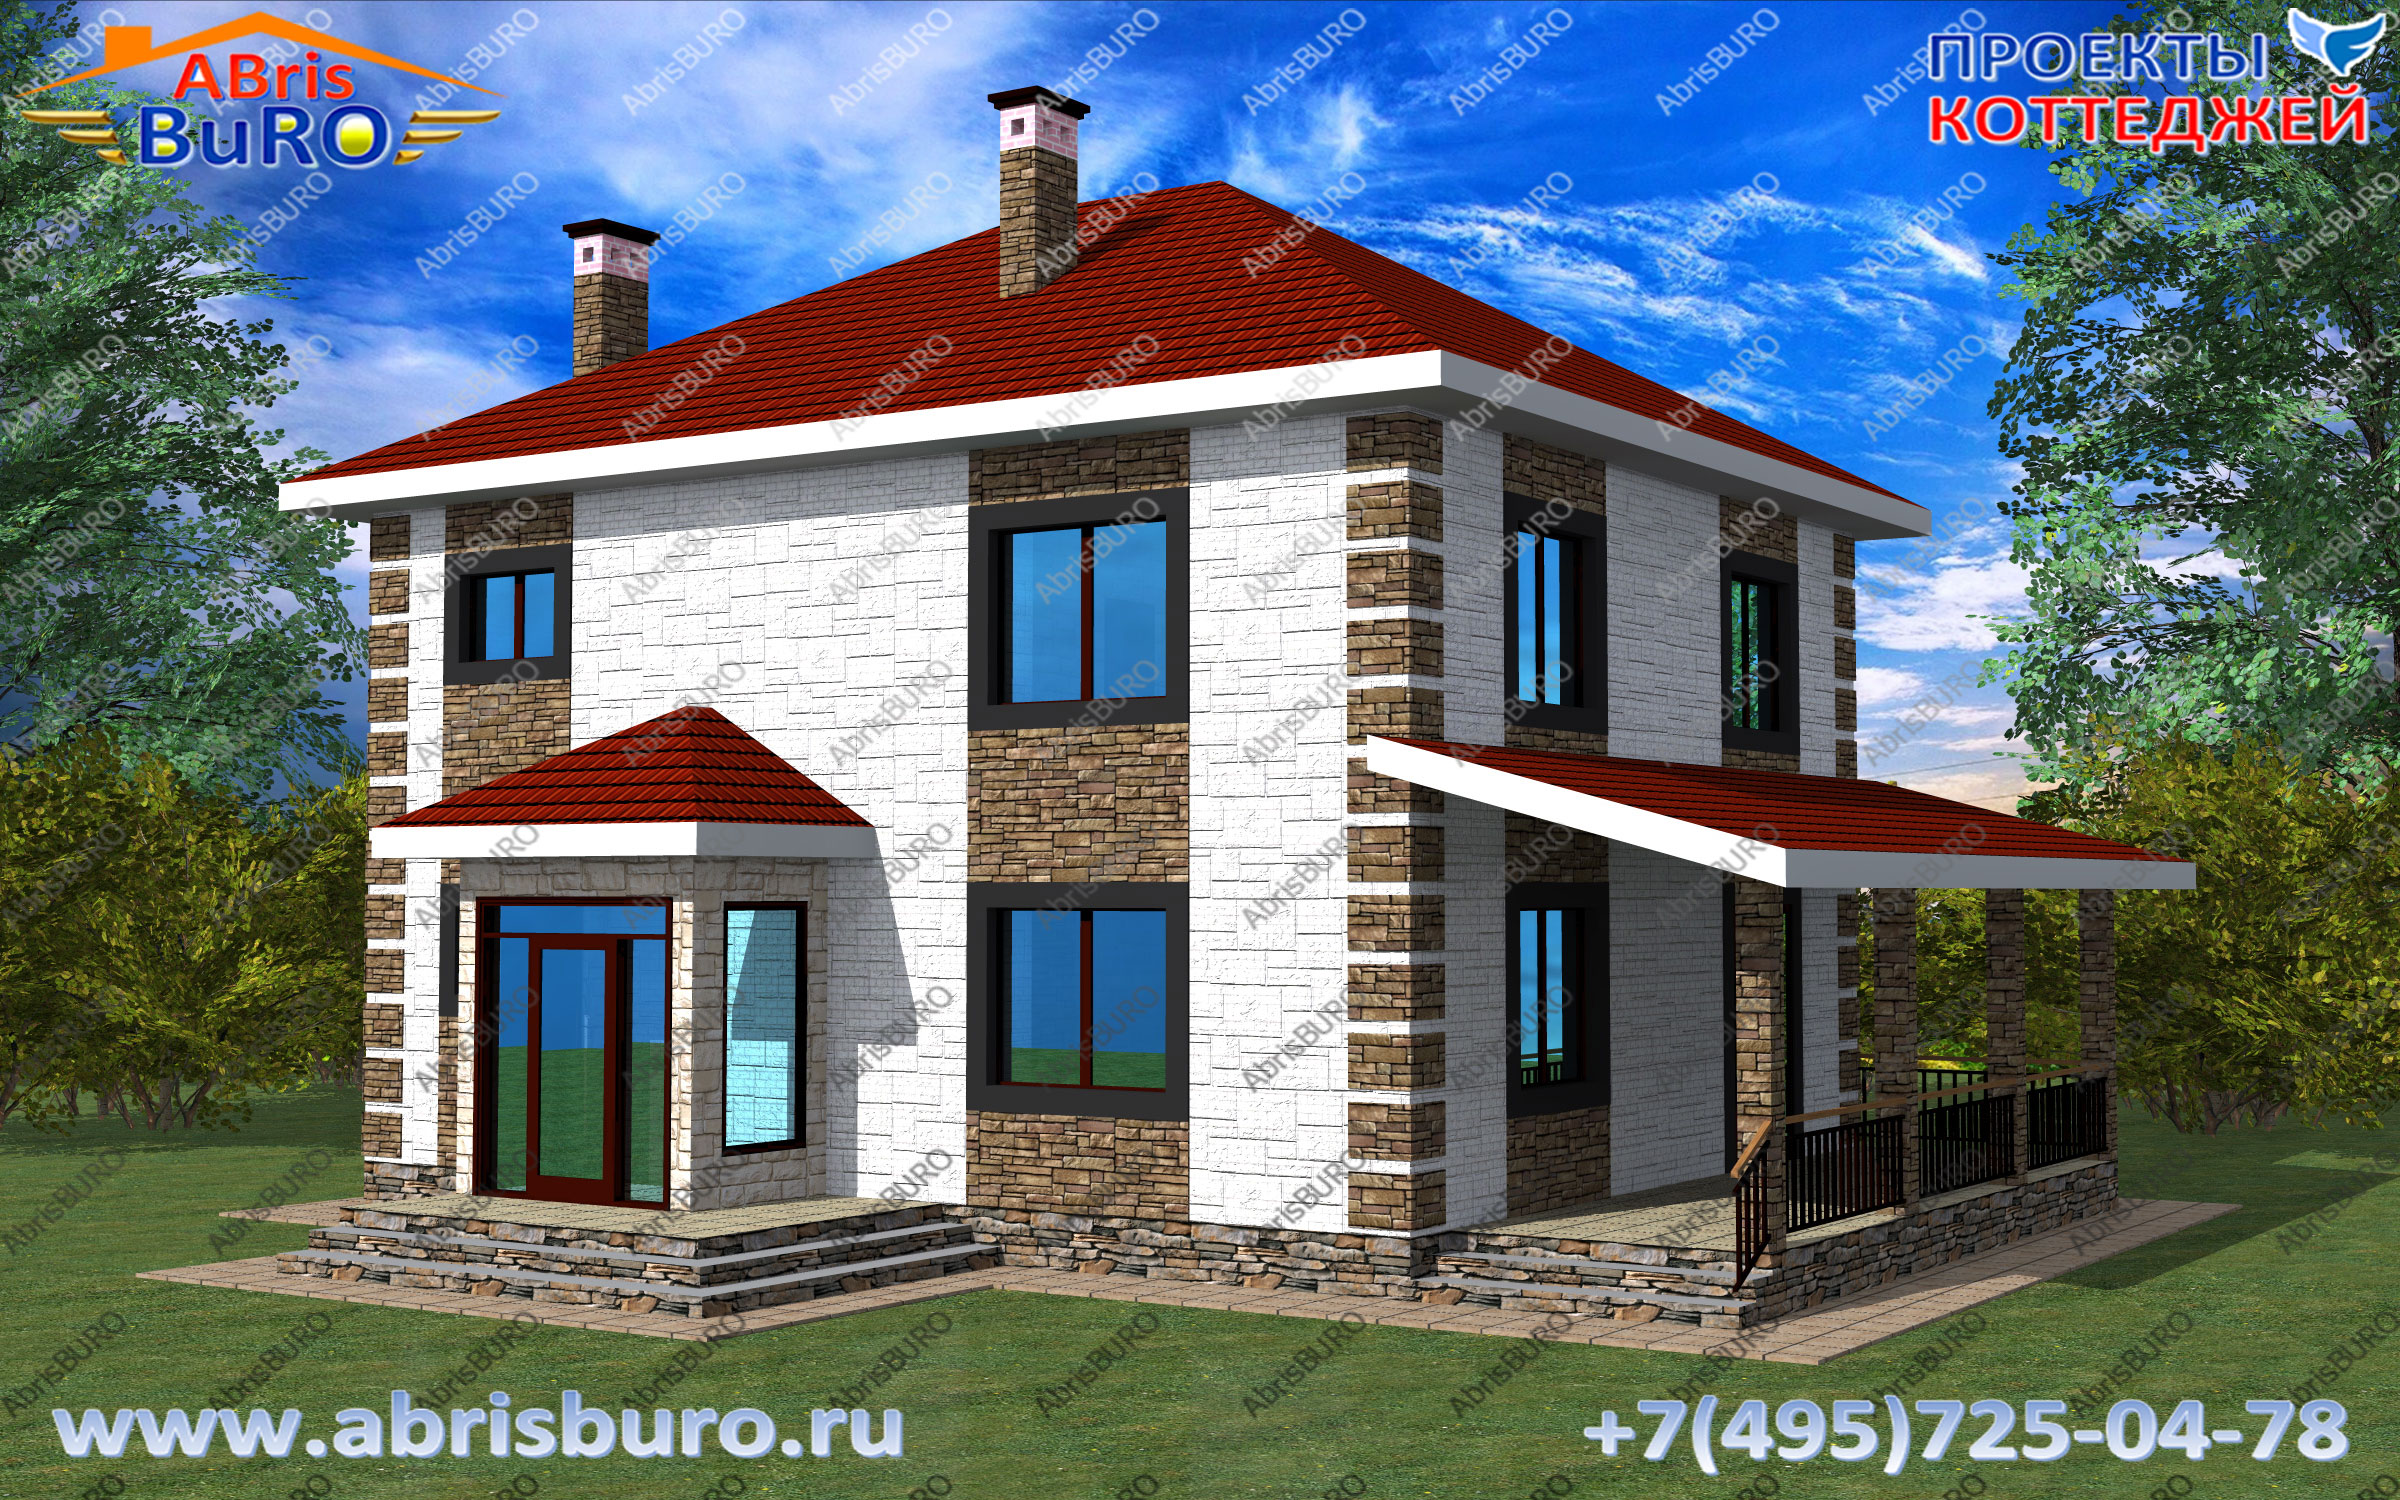 Двухэтажные коттеджи на сайте www.abrisburo.ru